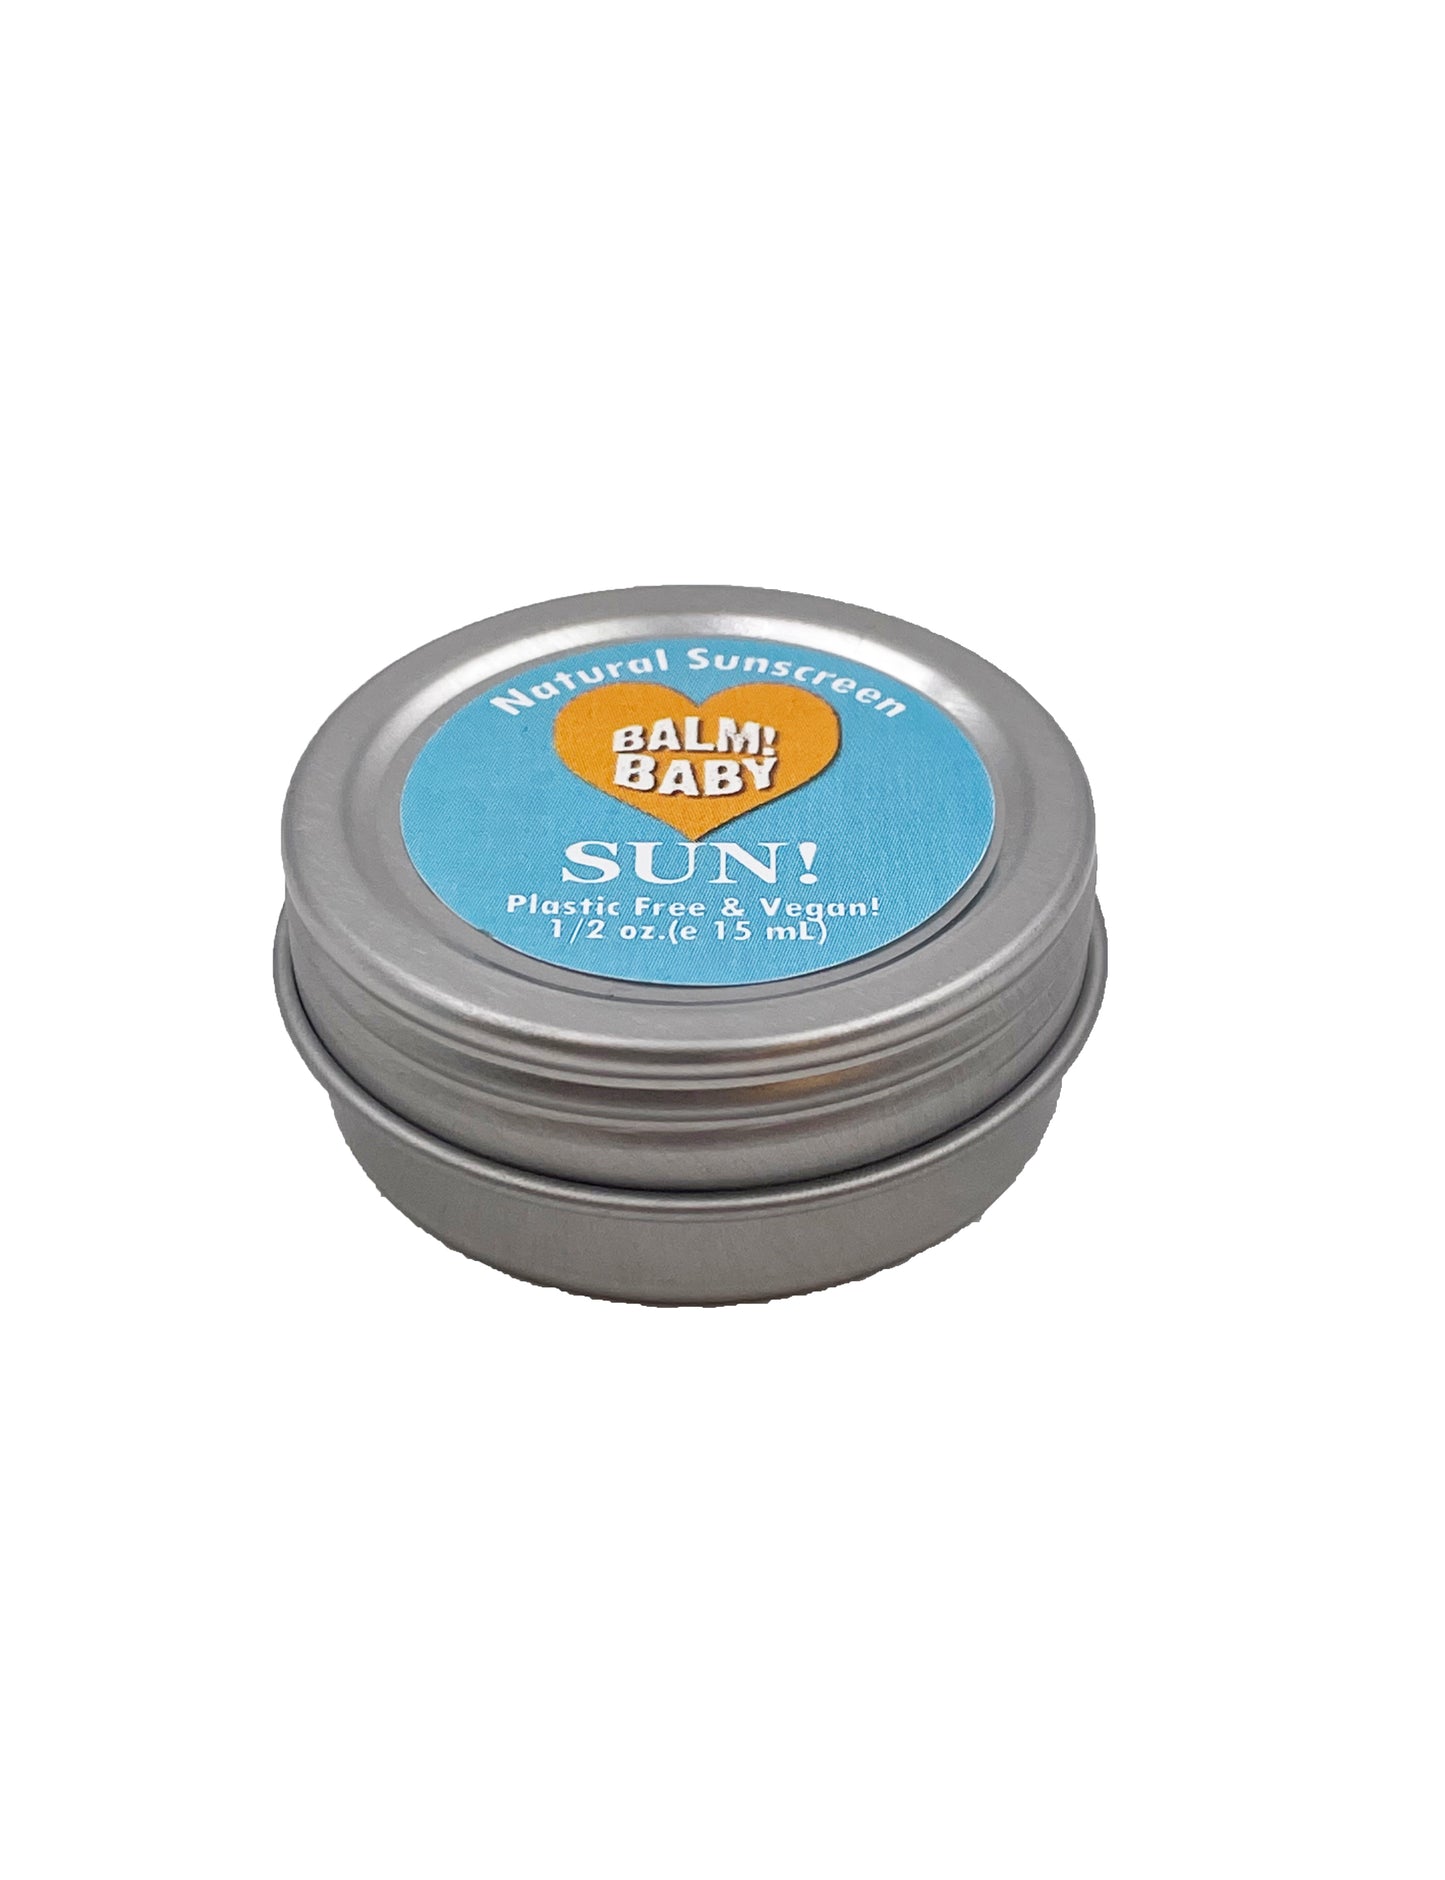 BALM! Baby - SUN 30SPF Natural Mineral Sunscreen- (SAMPLE SIZE)